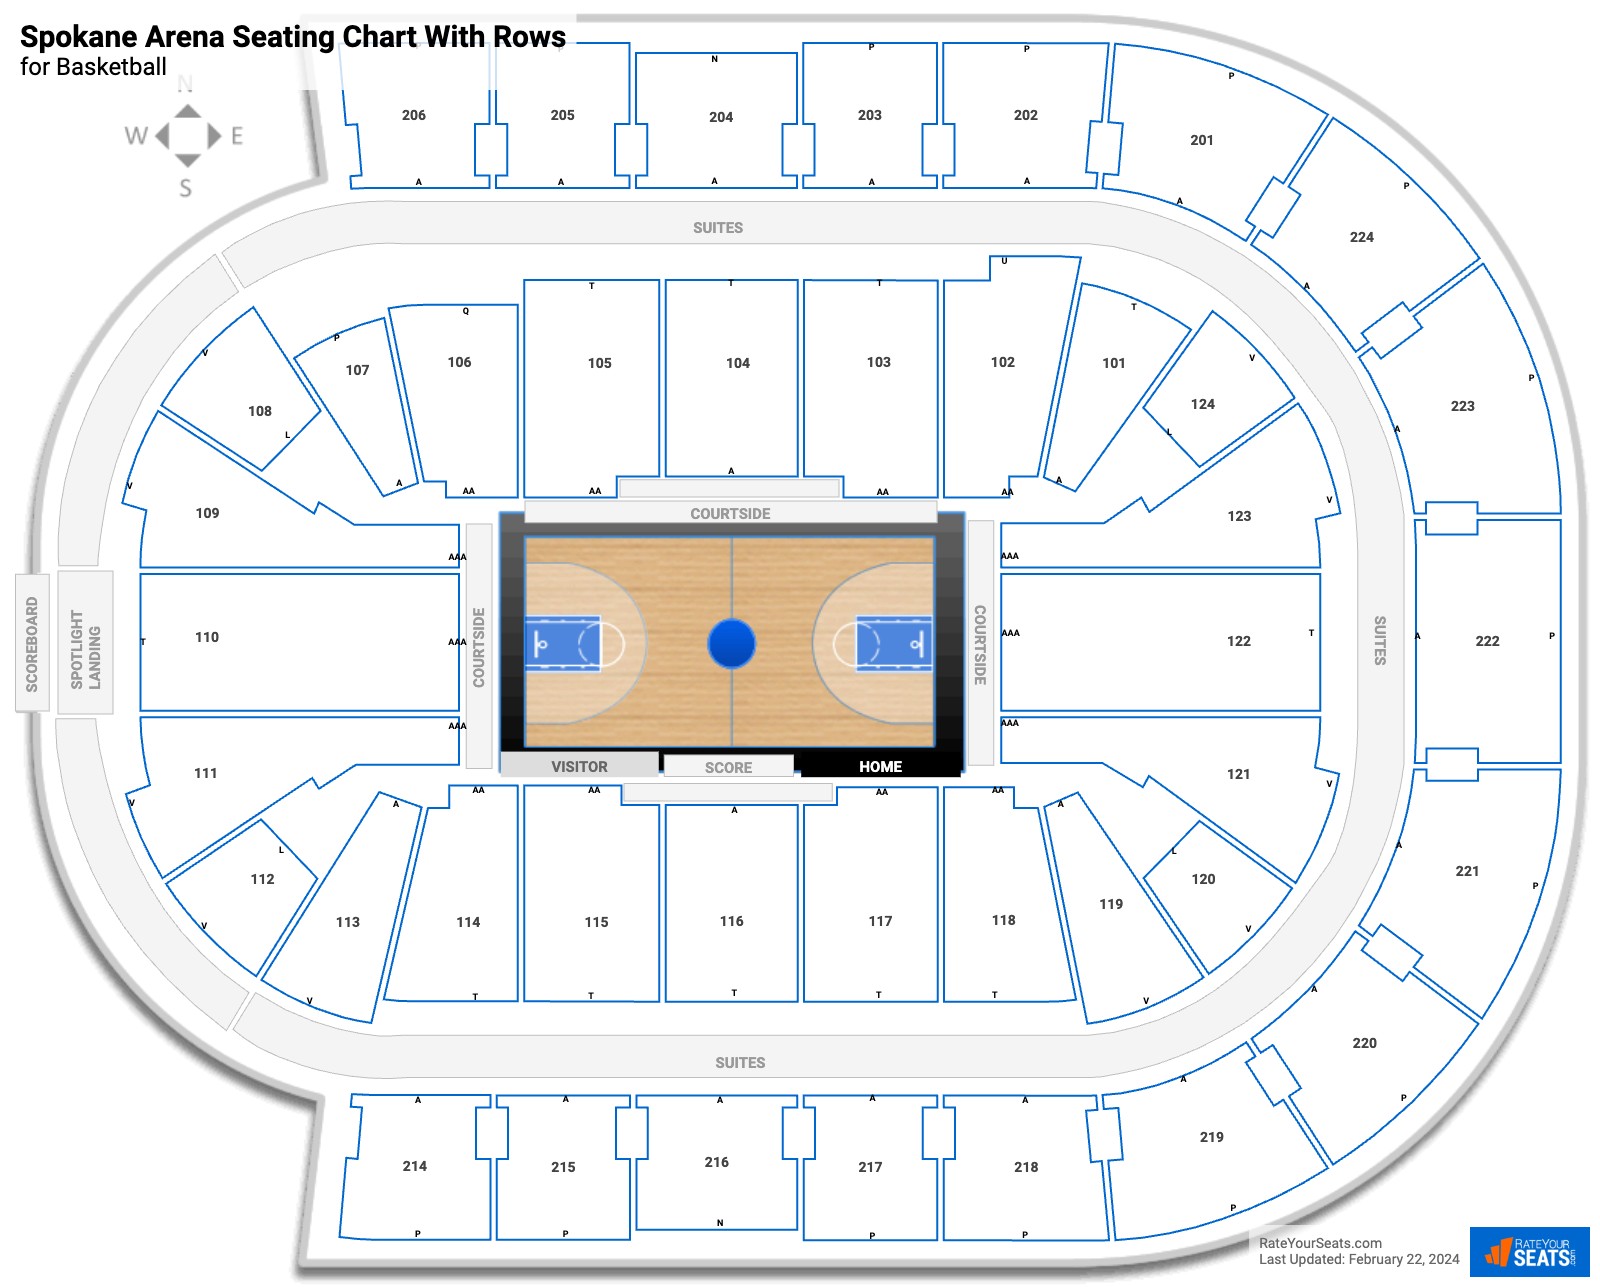 Spokane Arena Seating for Basketball